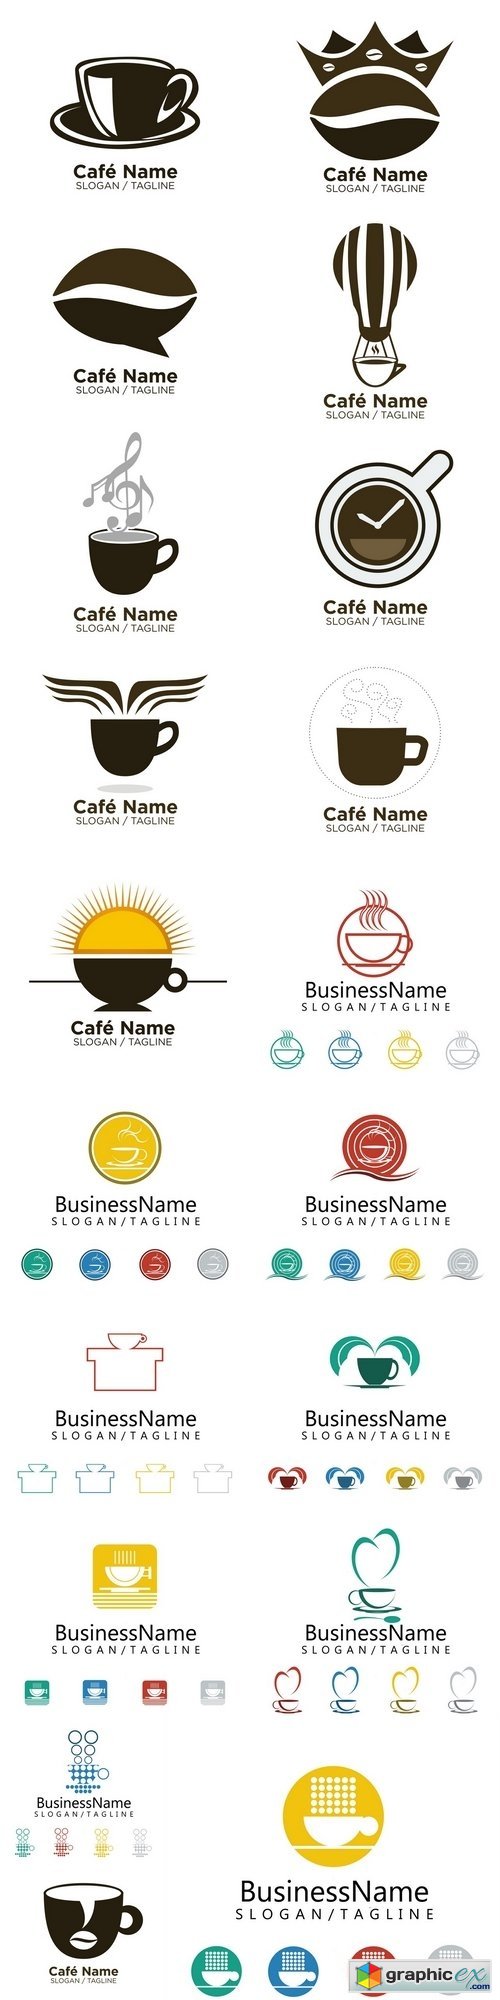 Coffee and Tea Cafe logo icon vector 3